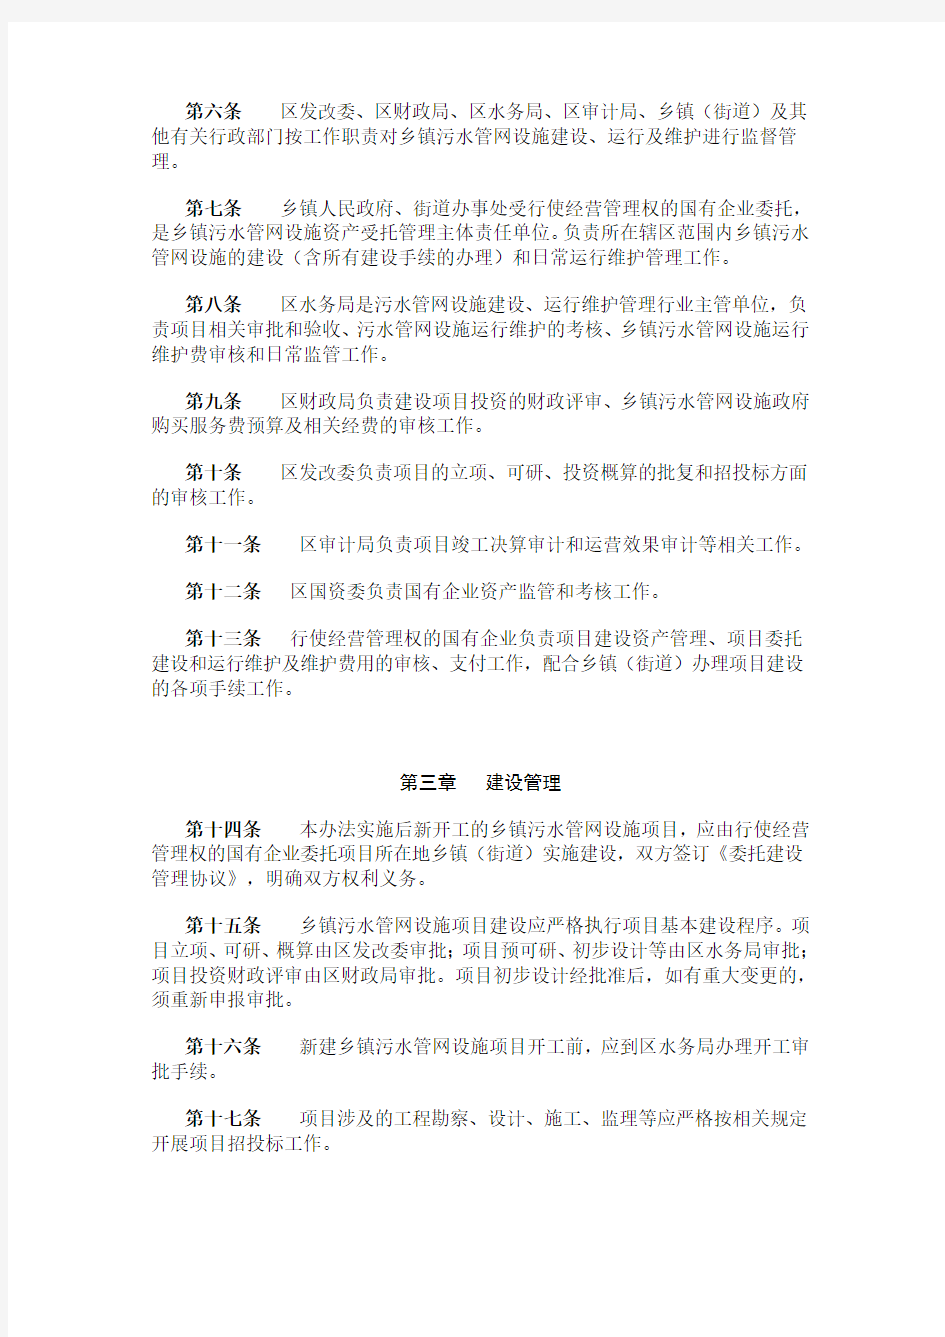 重庆市涪陵区乡镇污水管网设施建设维护管理暂行办法